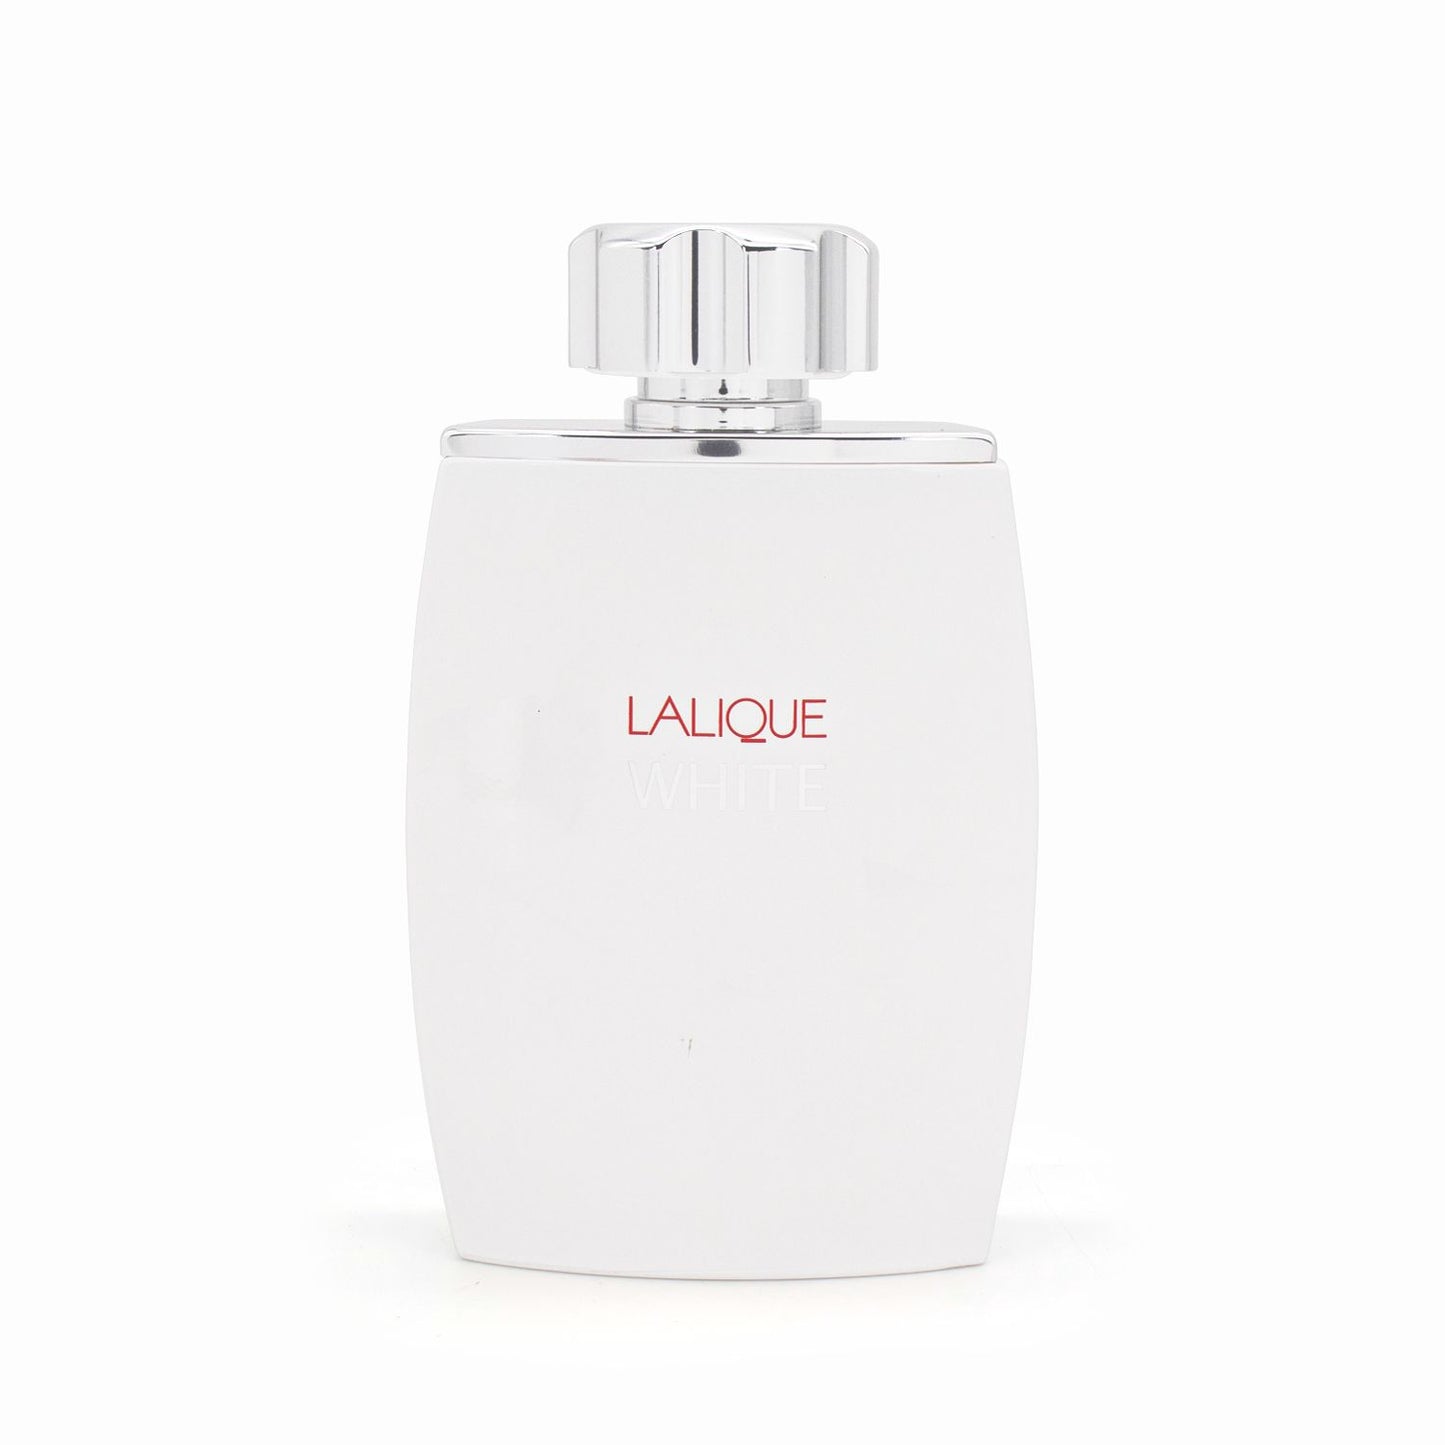 Lalique White Eau de Toilette 125ml - Imperfect Box